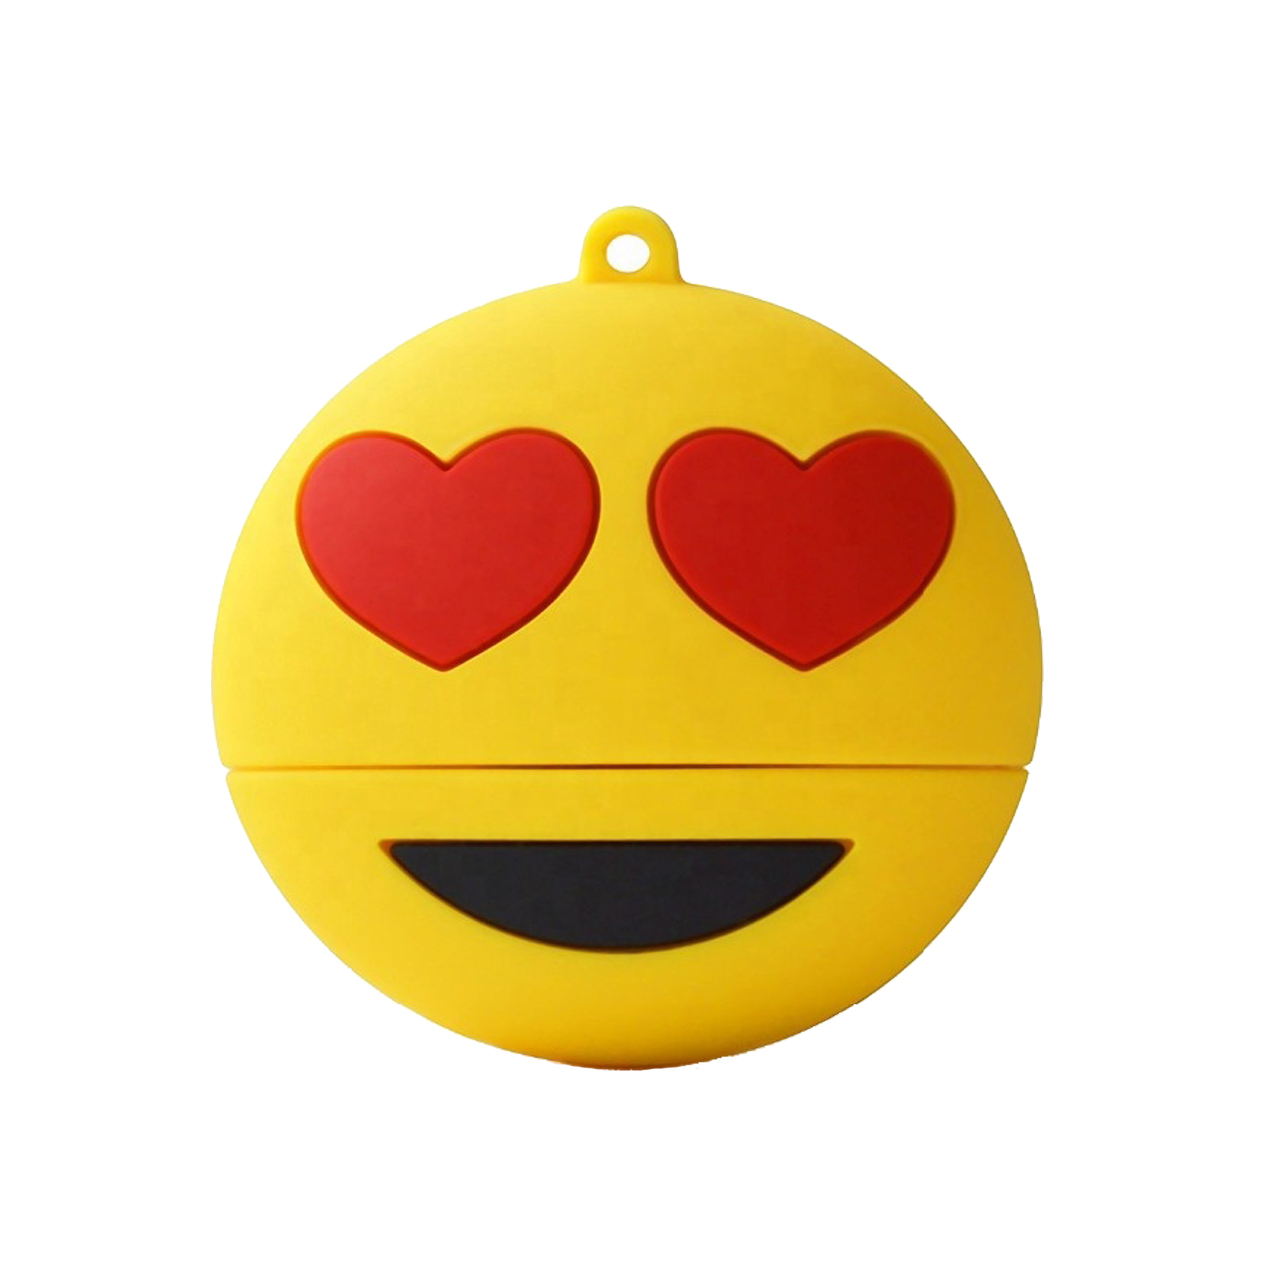 فلش مموری طرح ایموجی عشق مدل Ul-Emoji03 ظرفیت 8 گیگابایت